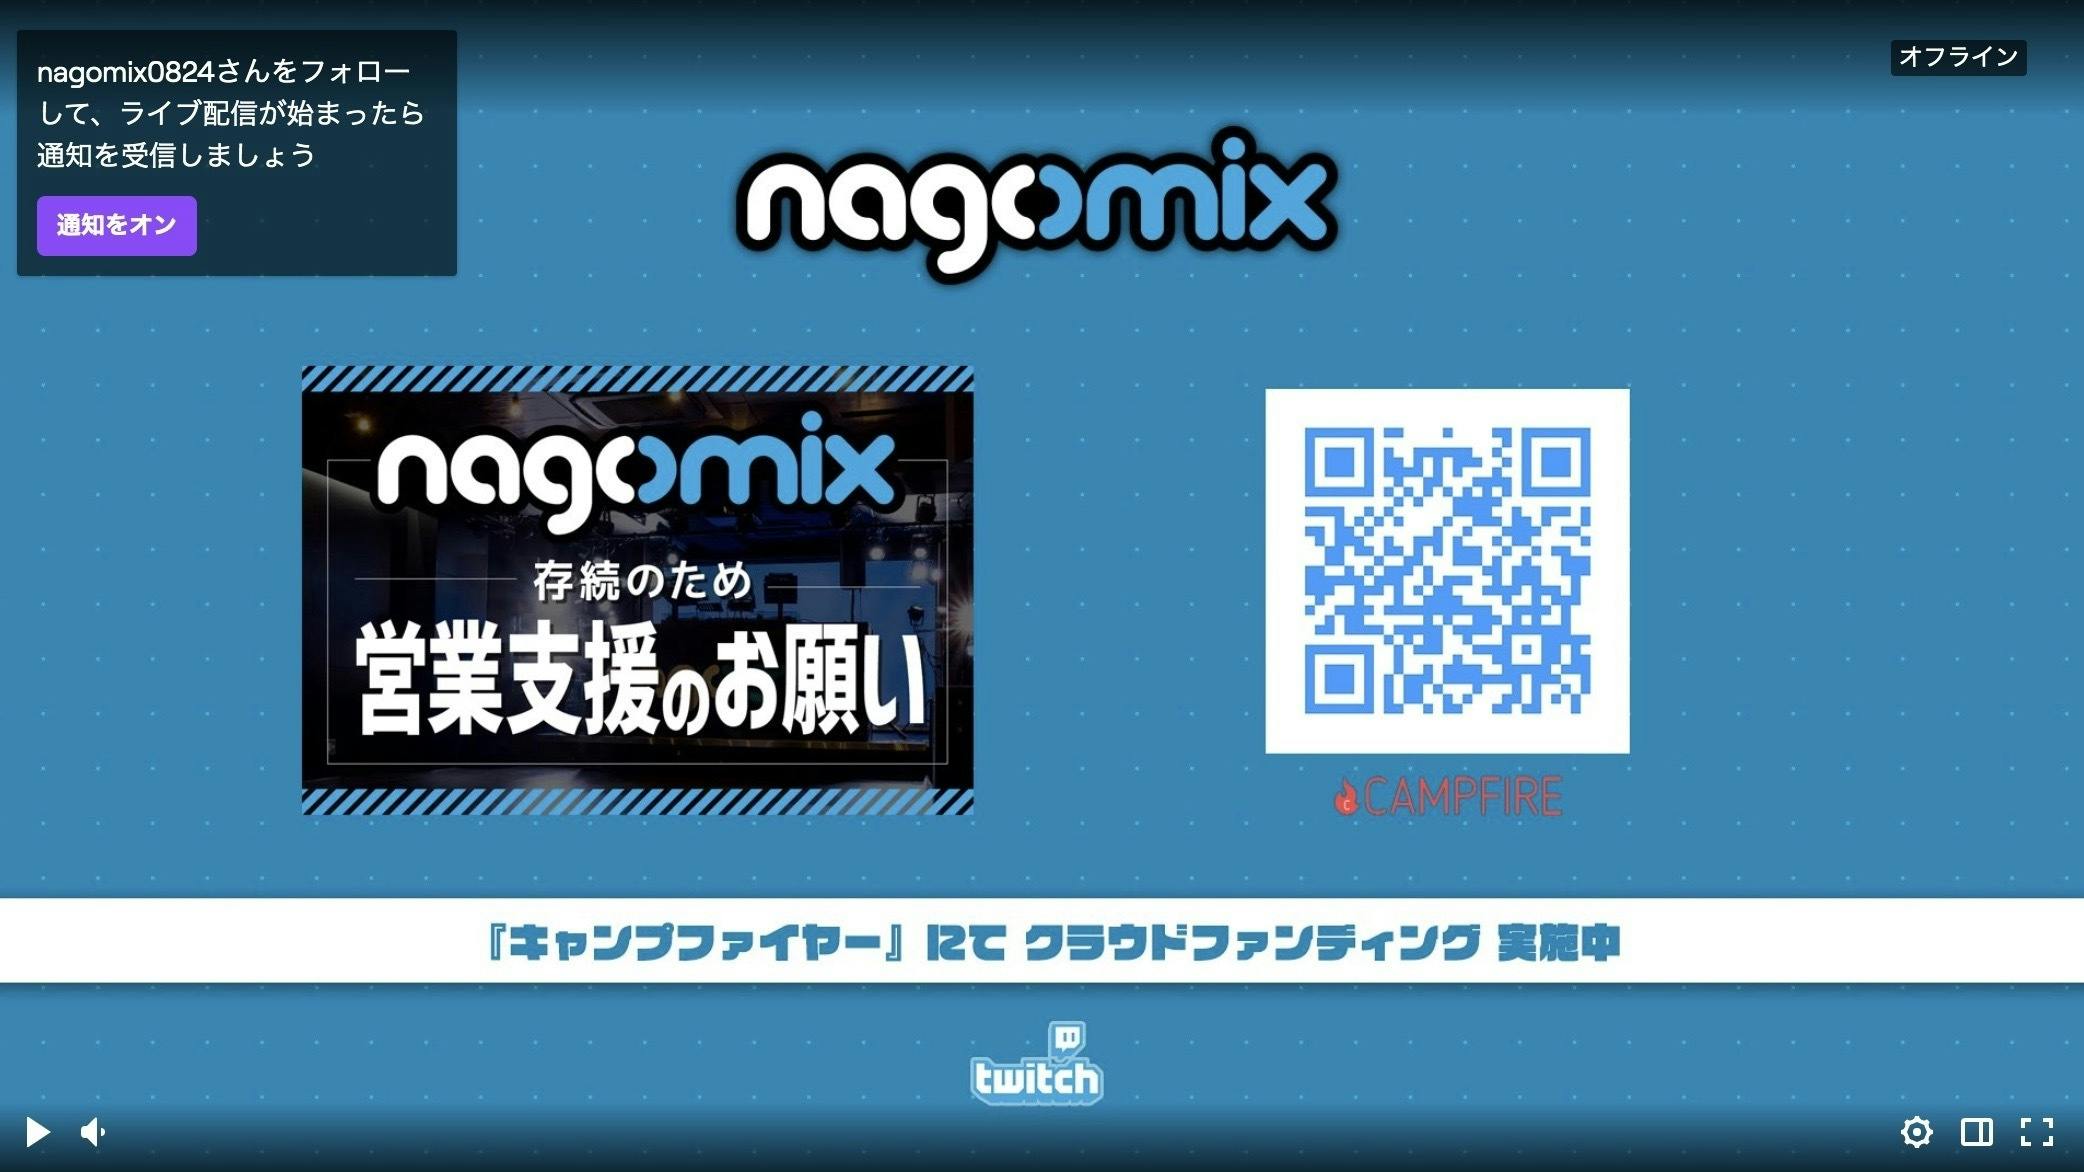 Nagomix渋谷 Twitchチャンネル開設 Campfire キャンプファイヤー